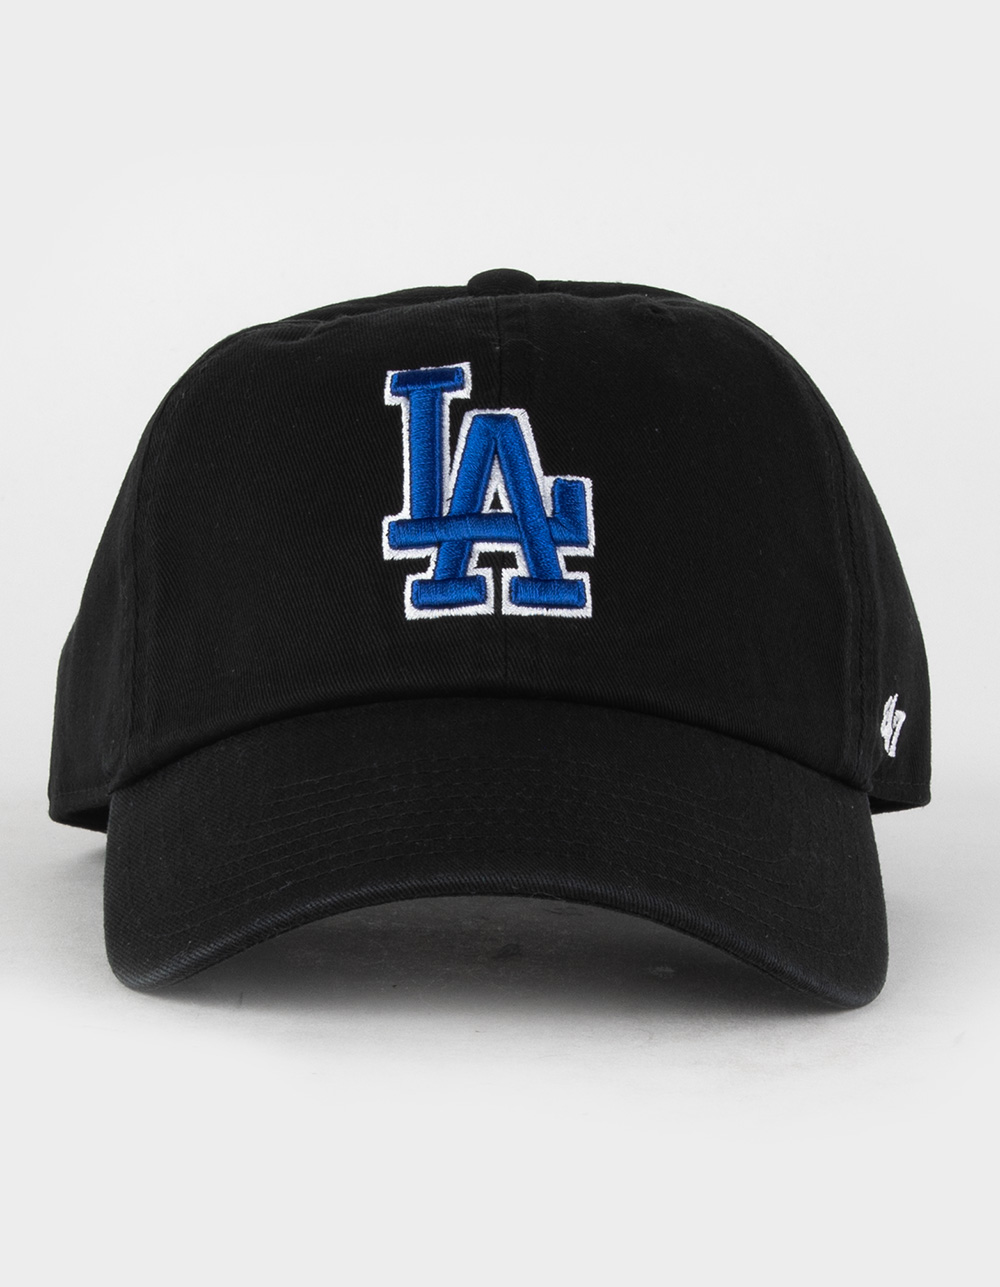 47 Brand Los Angeles La Dodgers Clean Up Hat Cap Black/Royal Blue